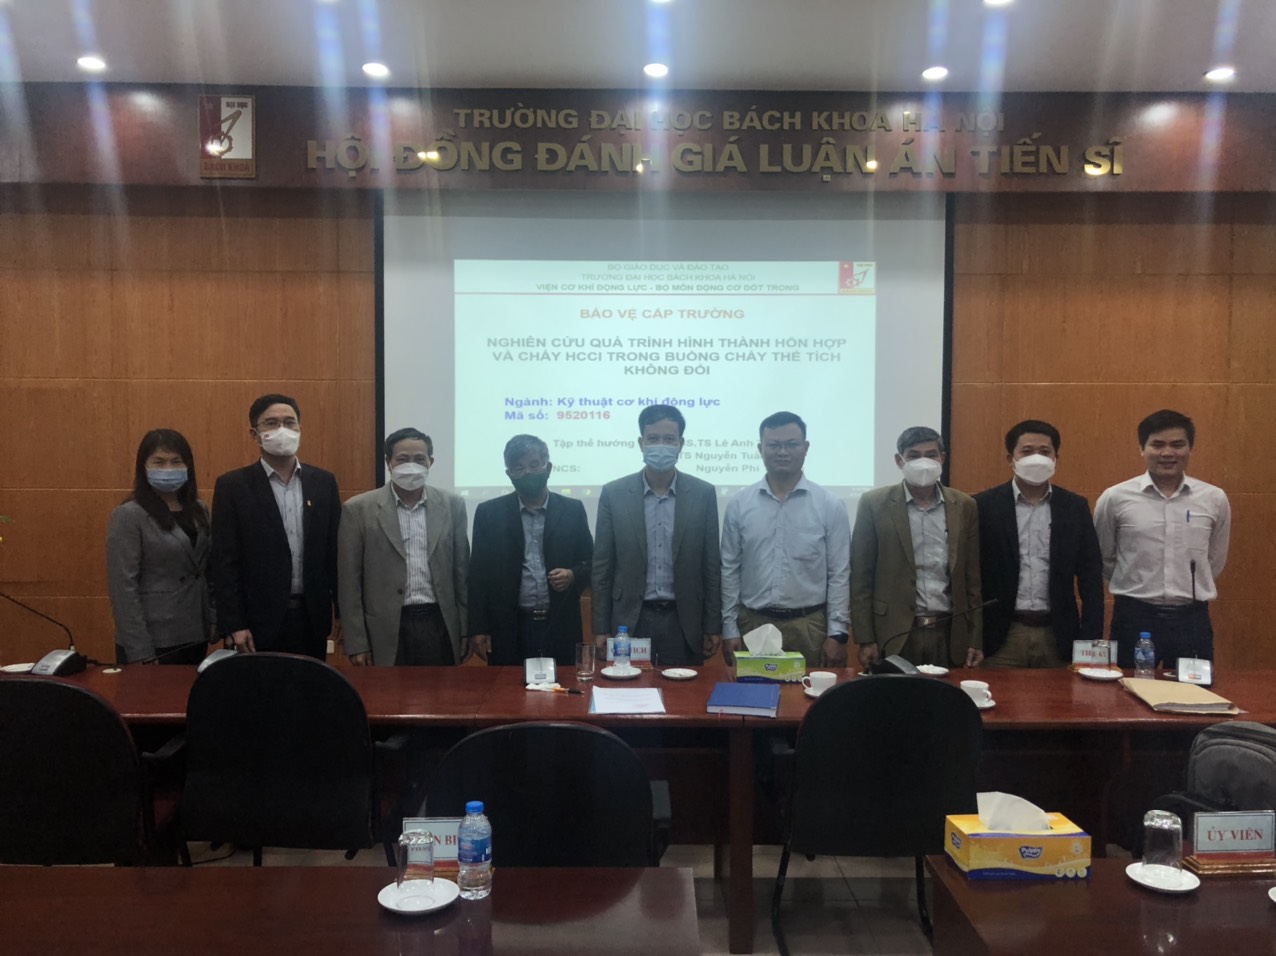 Đồng chí Nguyễn Phi Trường – Giảng viên Khoa Công nghệ ô tô trường Đại học Công nghiệp Hà Nội bảo vệ thành công luận án Tiến sỹ